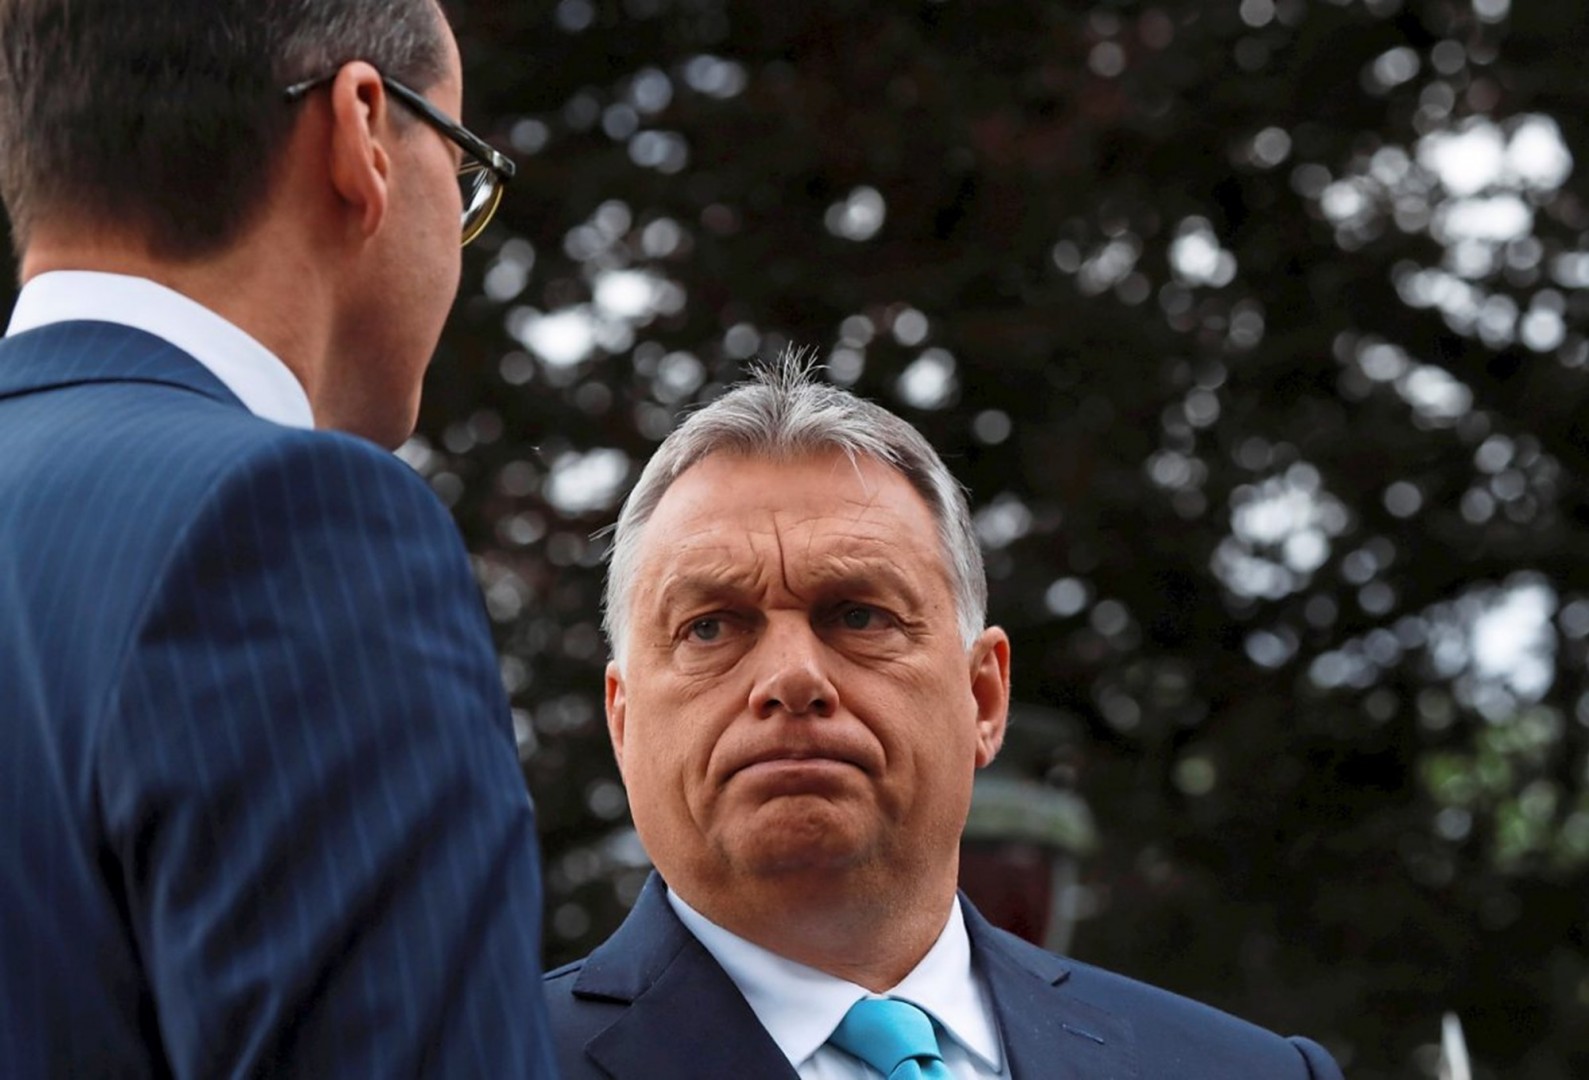 Orbáns Ziel ist es, die EU radikal zu verändern